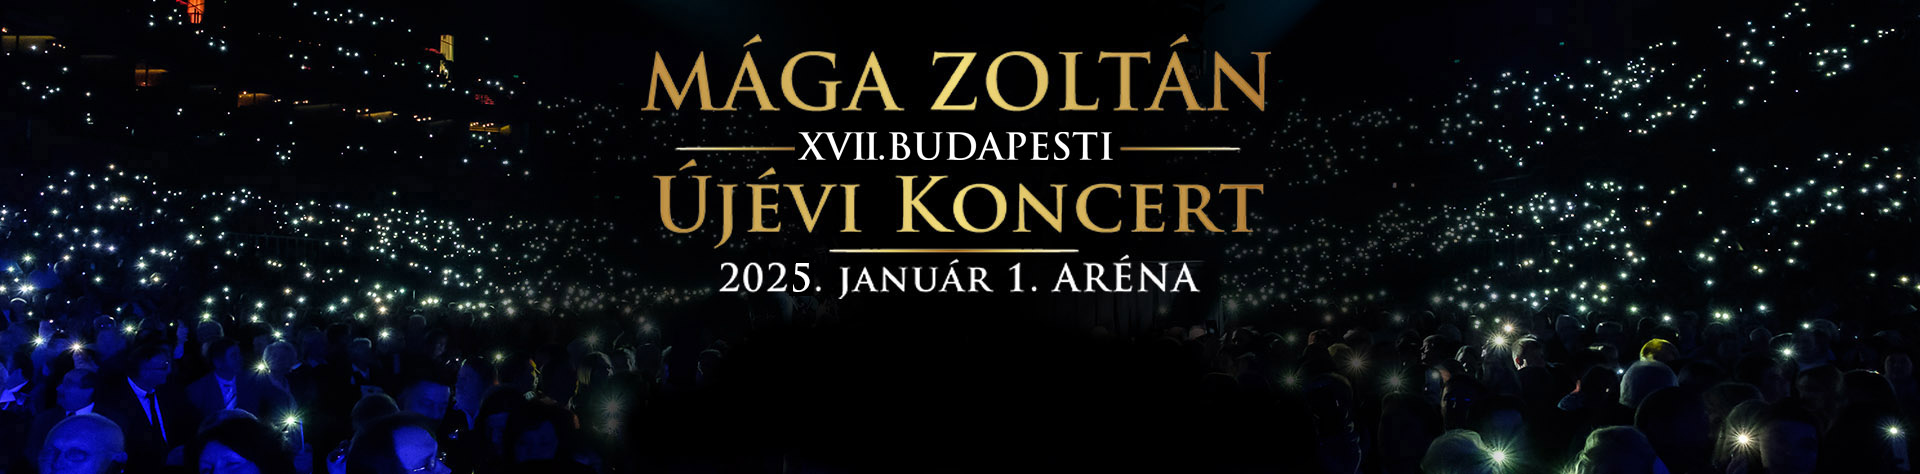 XVII. Budapesti Újévi Koncert